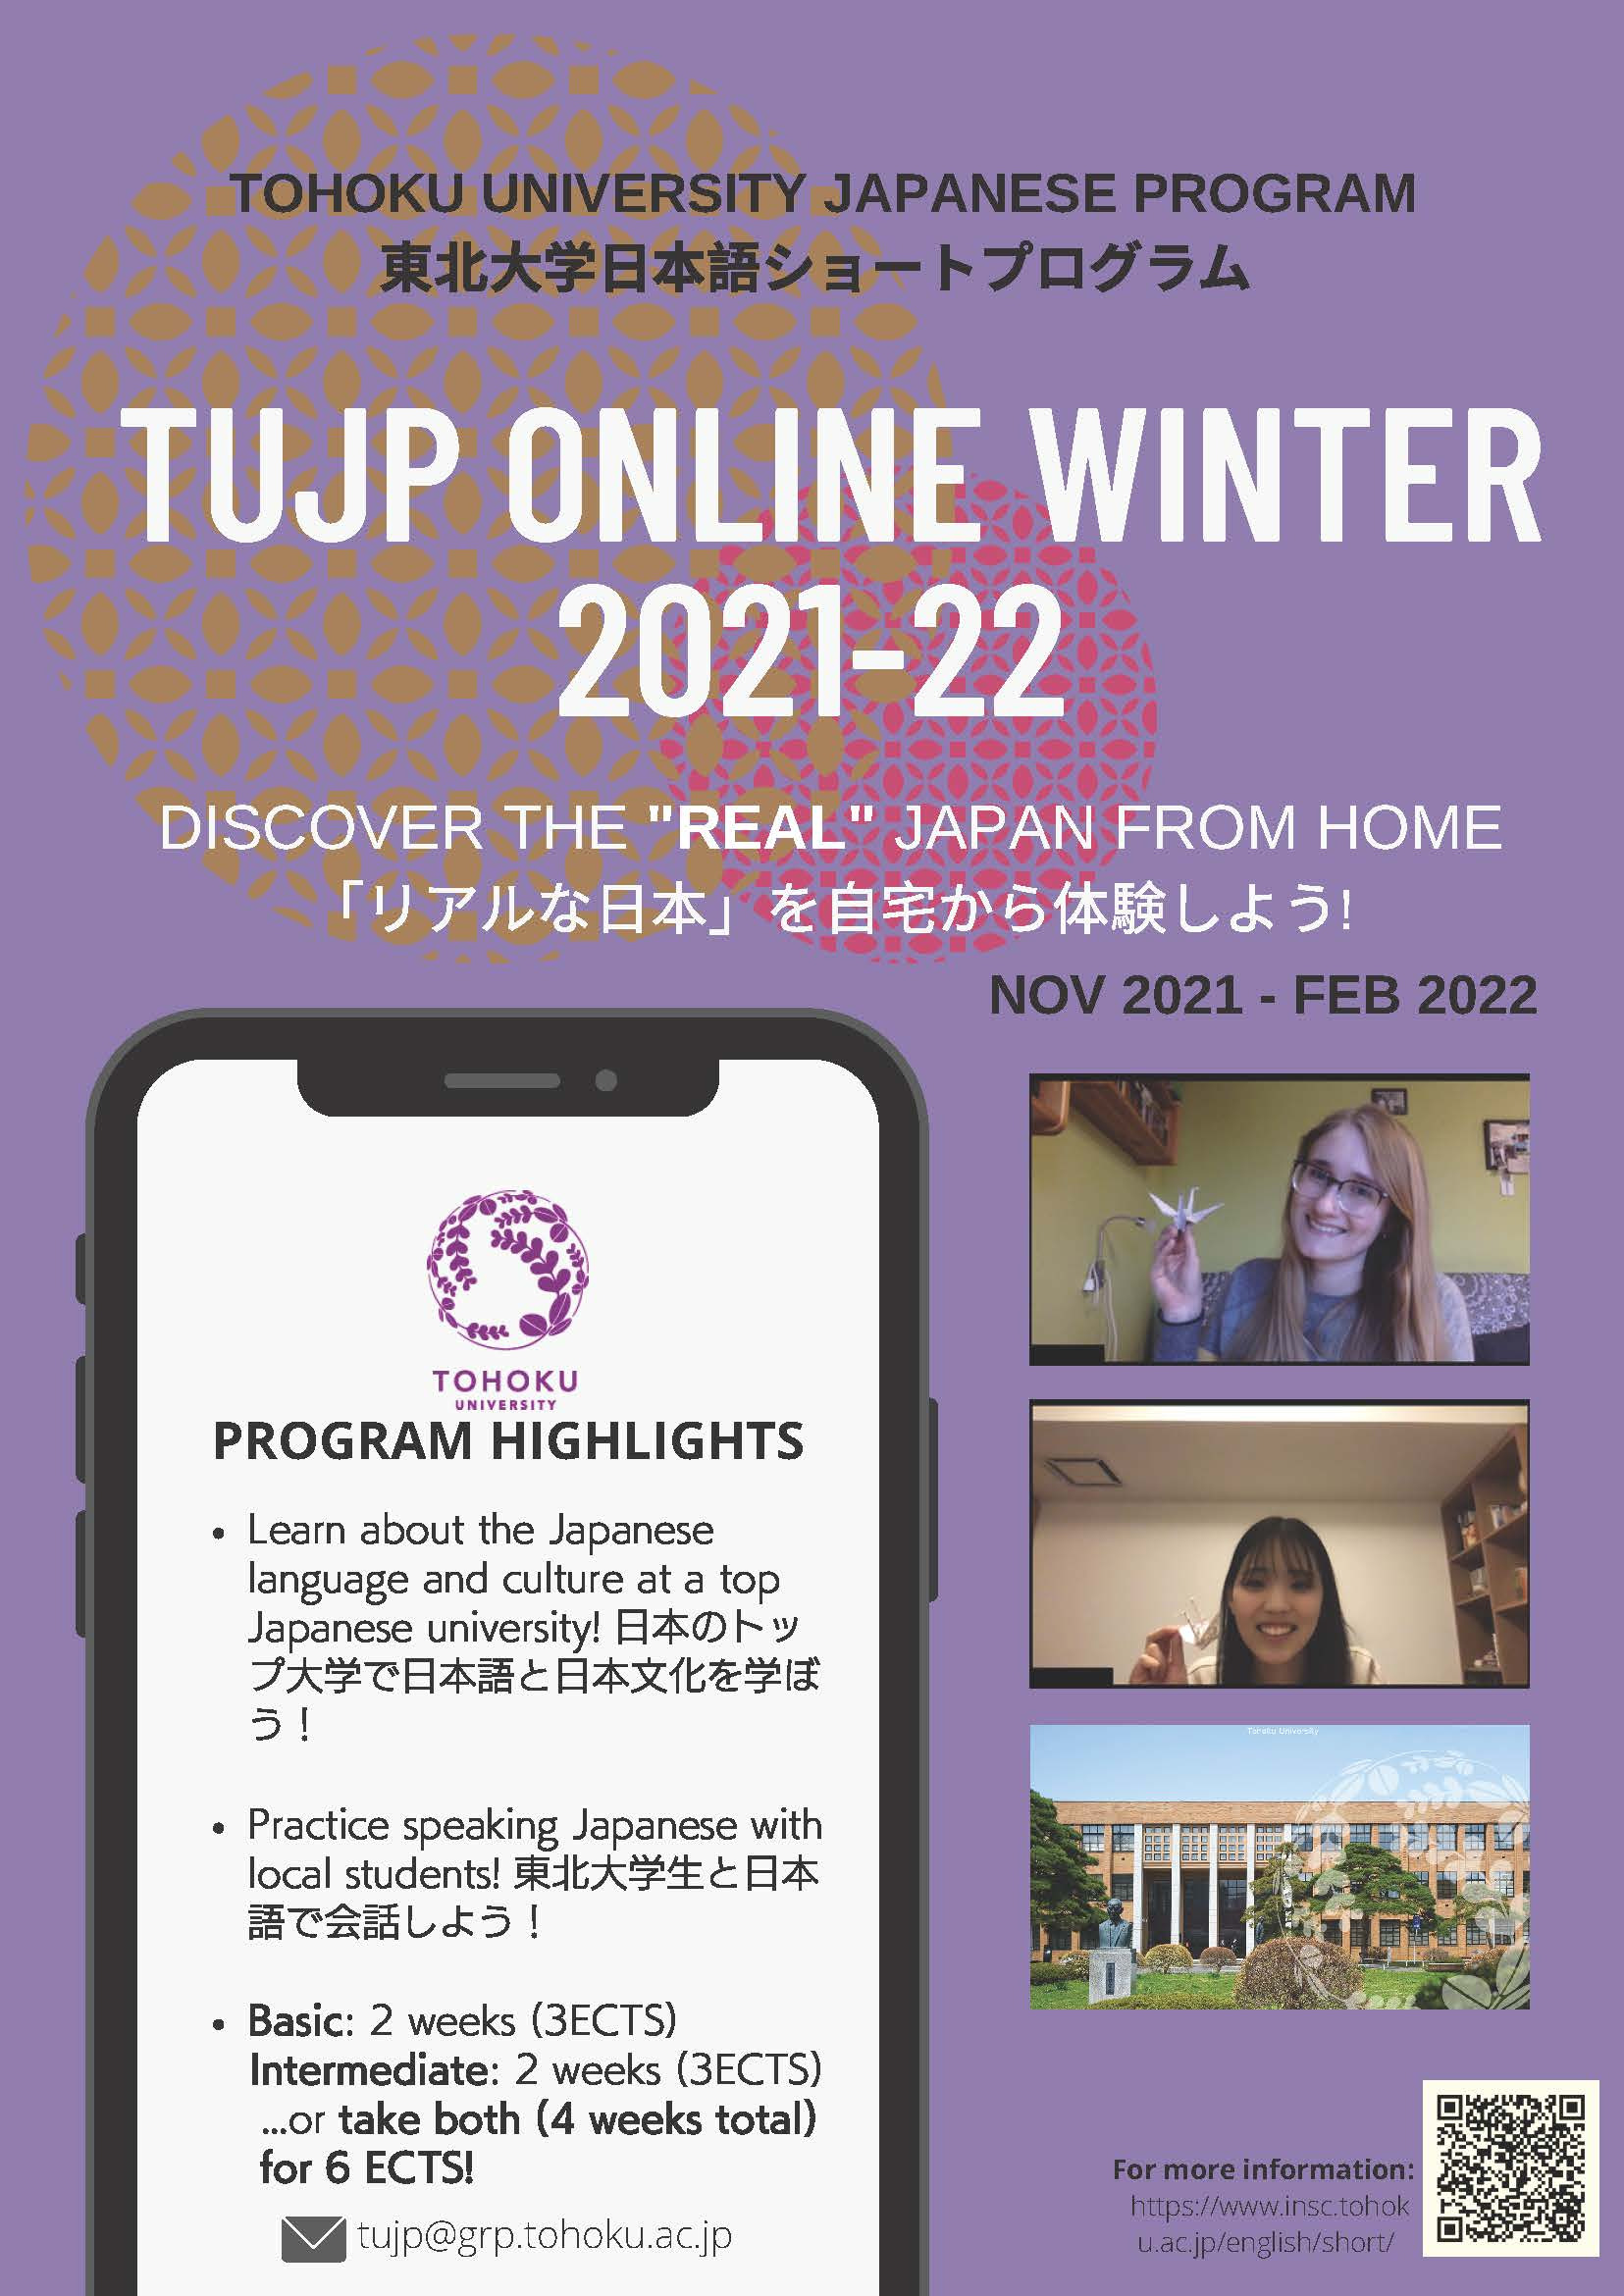 ประชาสัมพันธ์โครงการ “Tohoku University Japanese Program (TUJP) Online” 